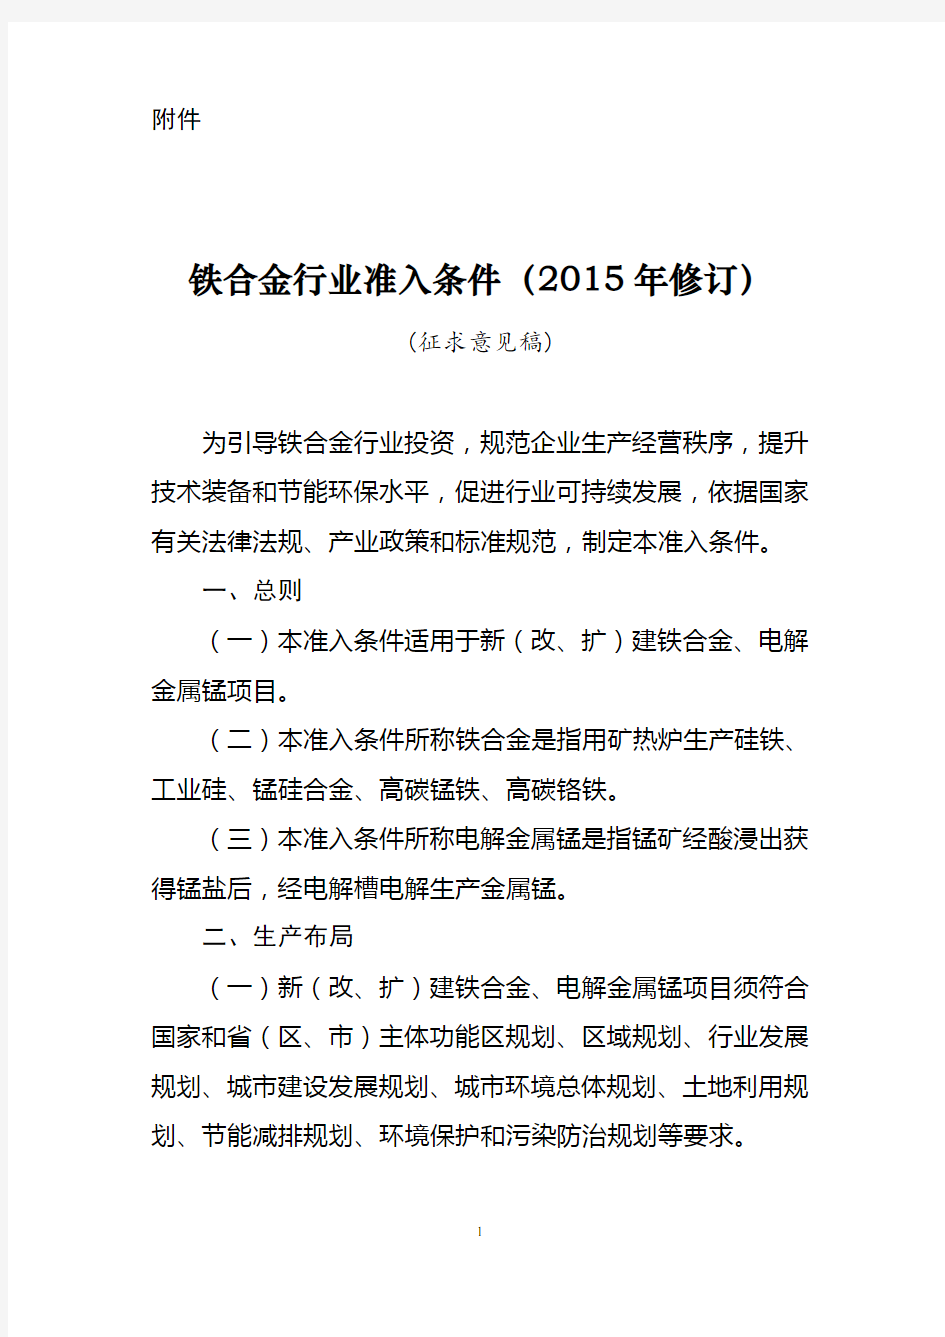 铁合金行业准入条件-中华人民共和国工业和信息化部